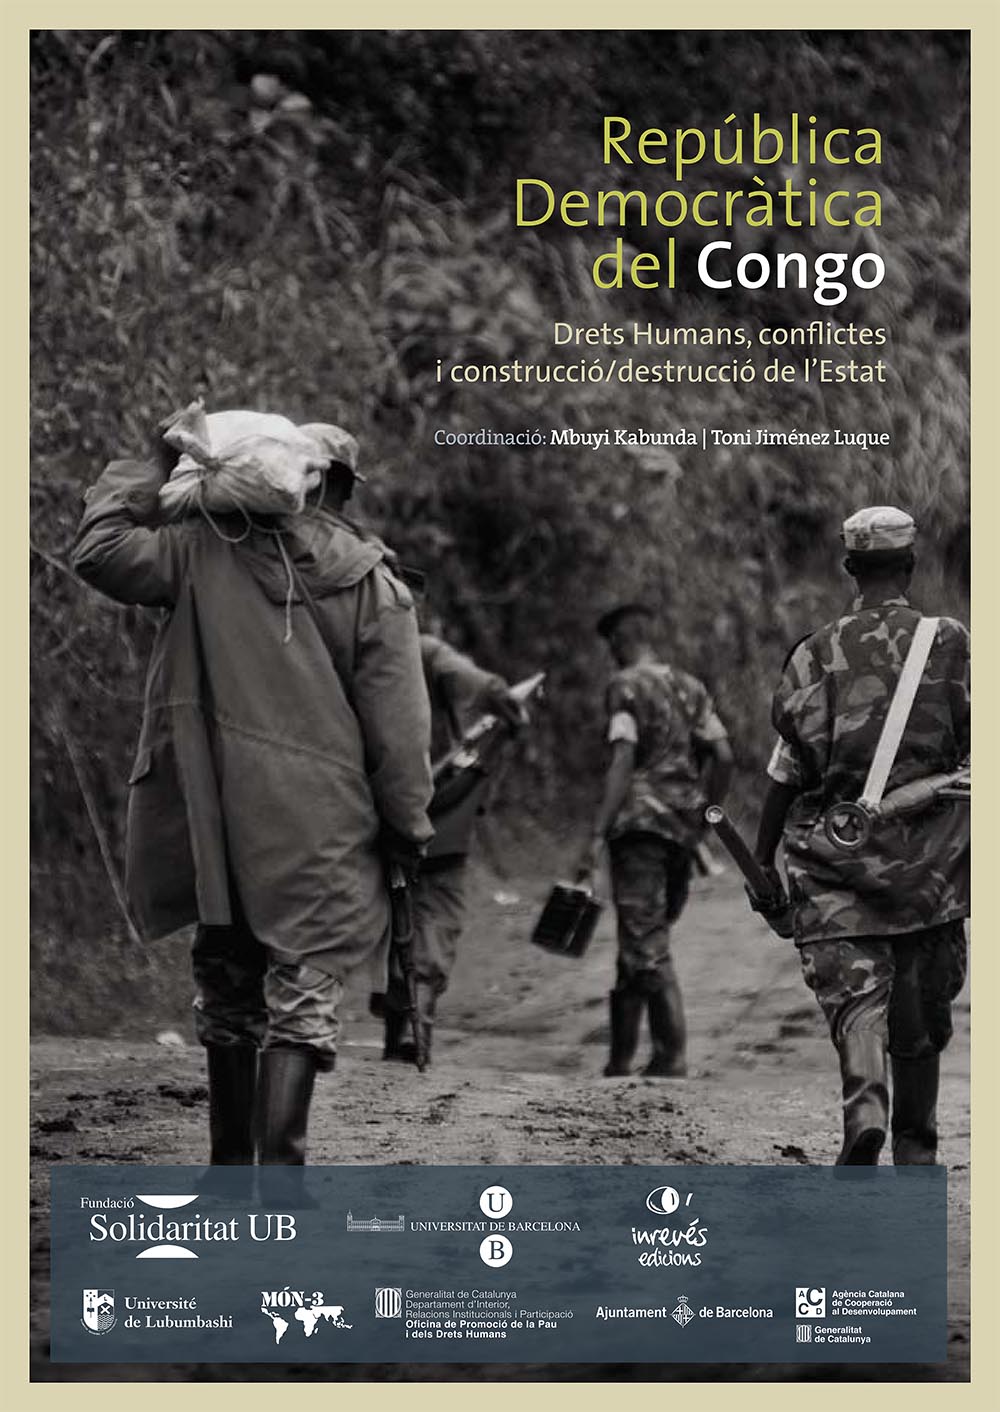 Drets_Humans_a_la_Republica_Democratica_del_Congo